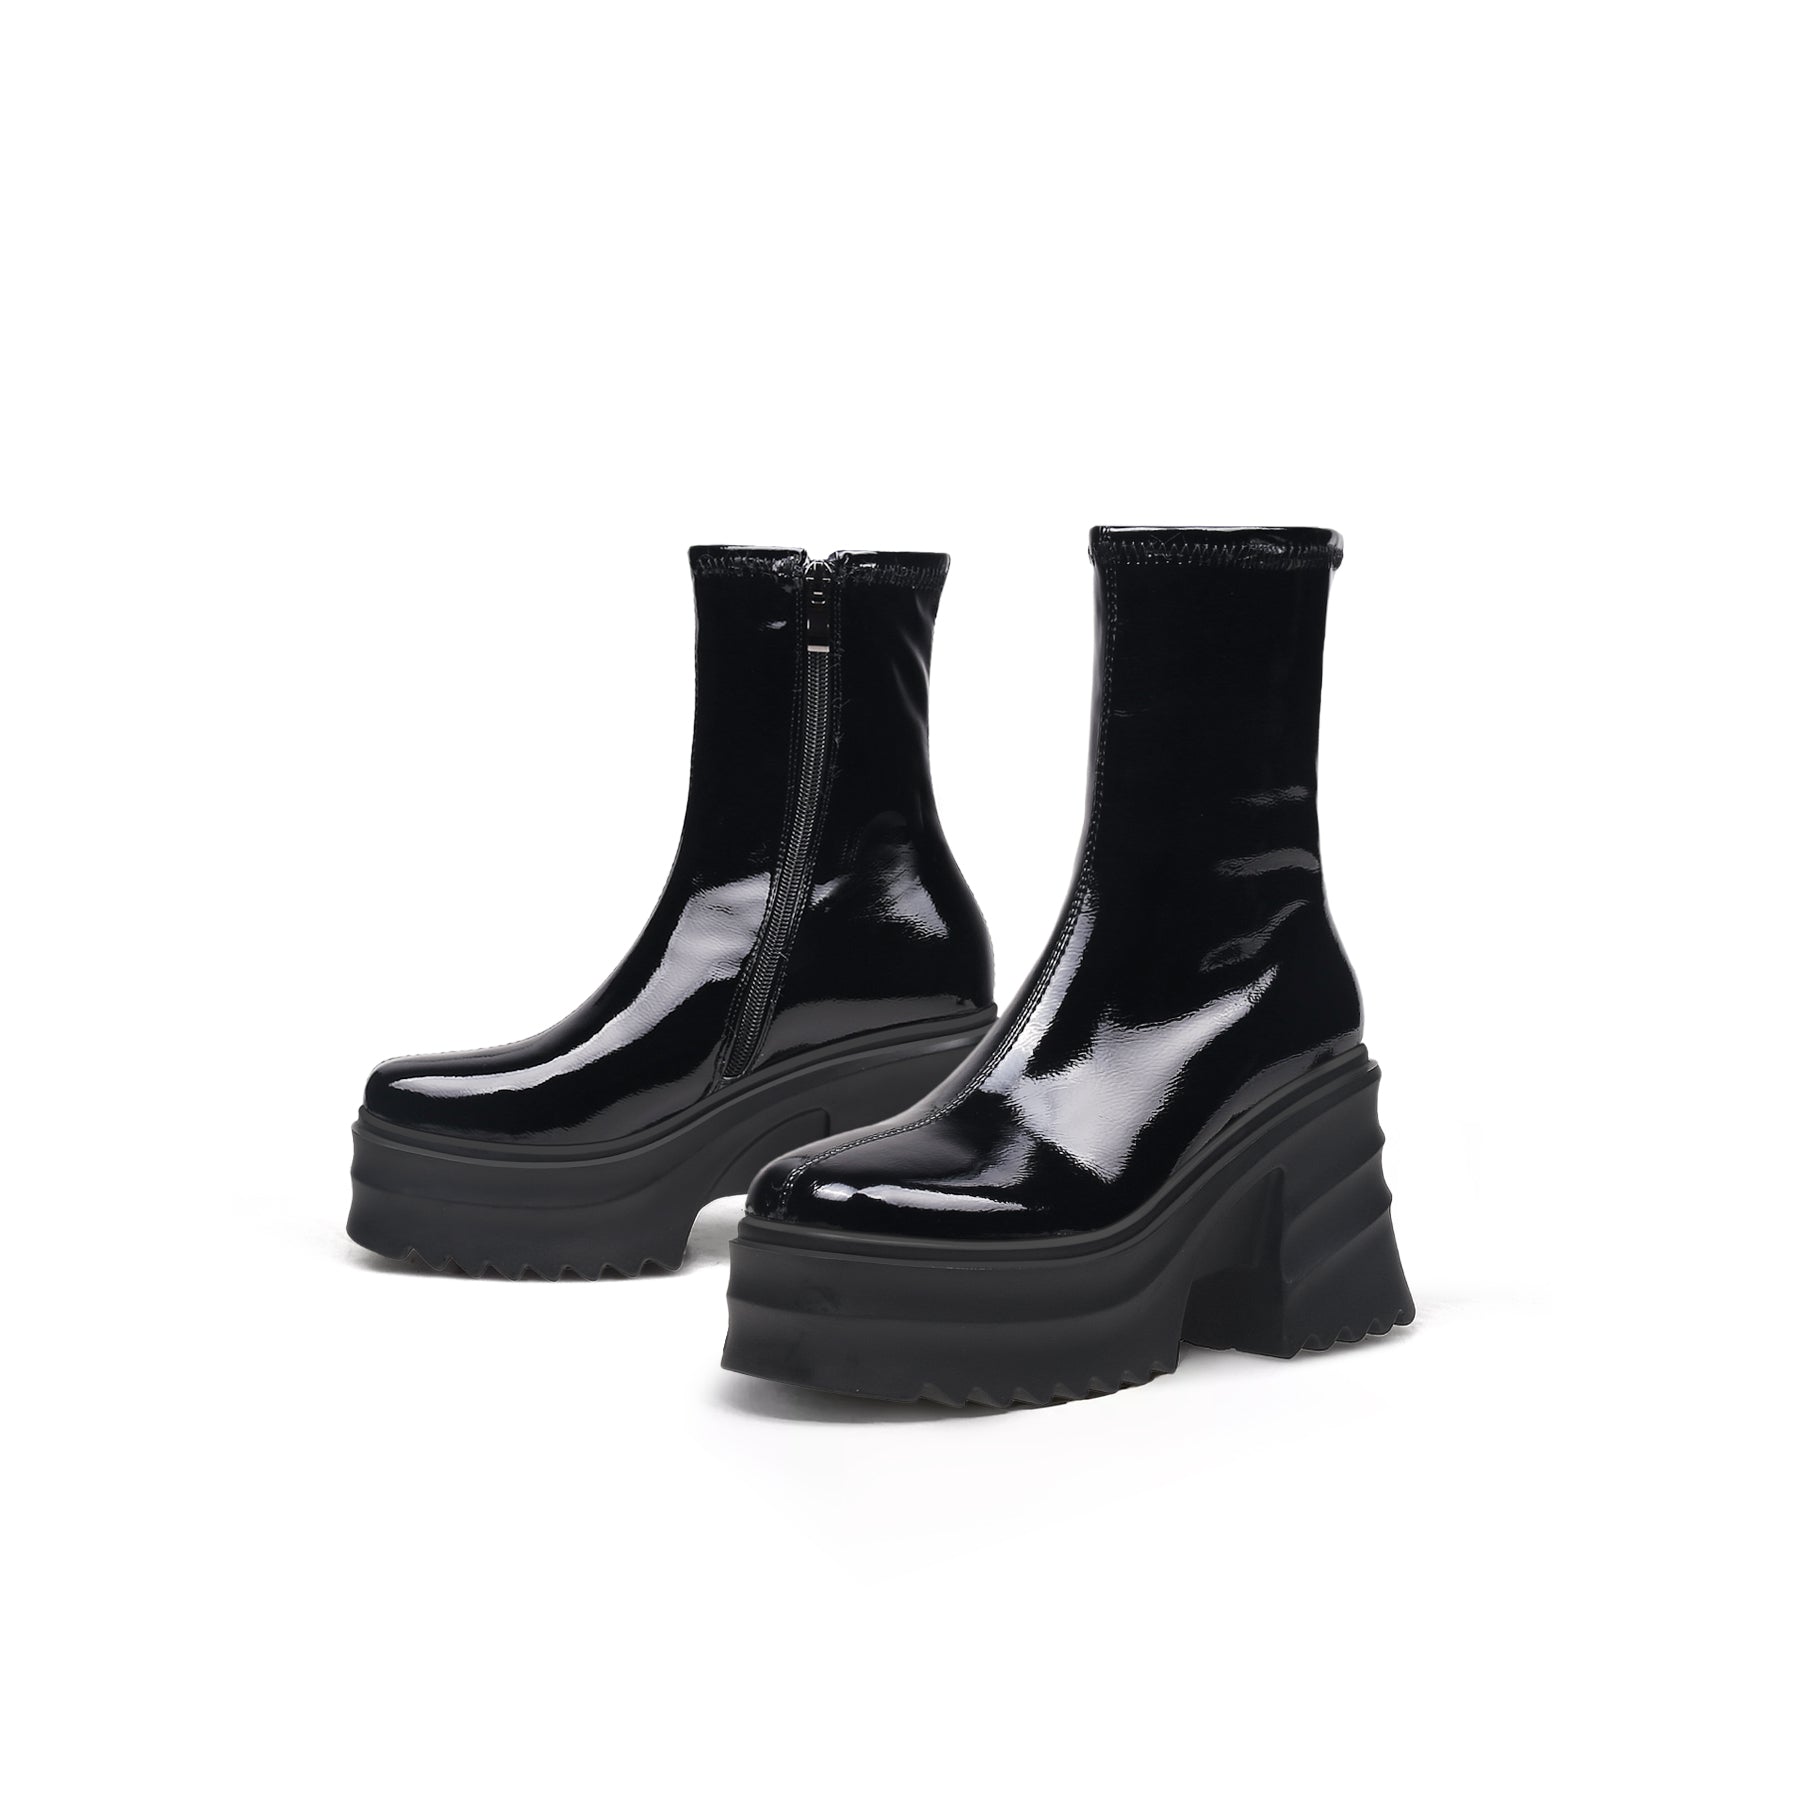 Patent Cloudy Platform Black Boots - 0cm